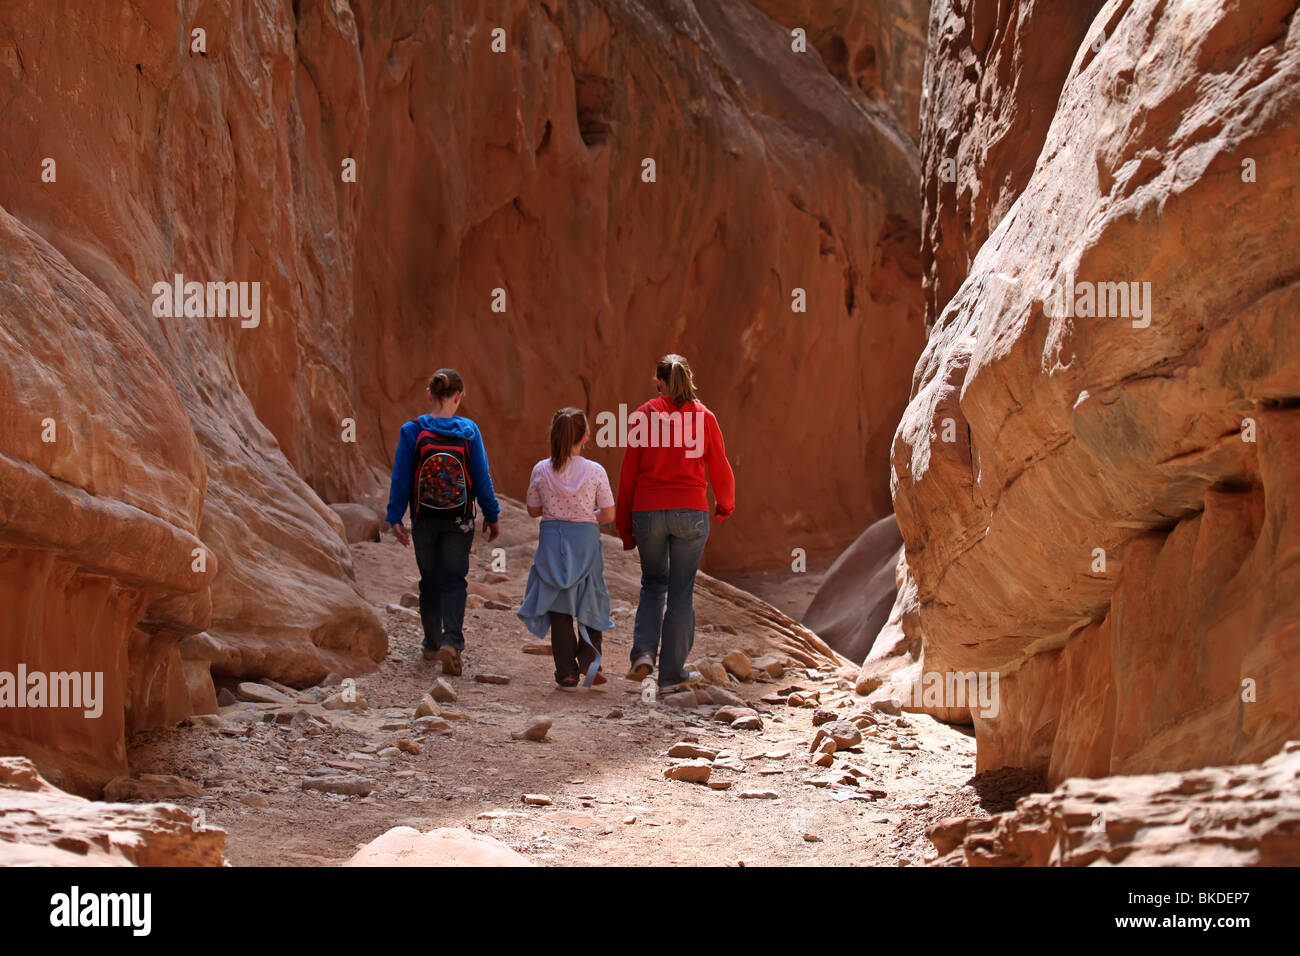 Kinder wandern bis über die rauen Felsen in Wüste Wildnis Bergen von Utah. Slotcanyon im Wildnisgebiet. Stockfoto